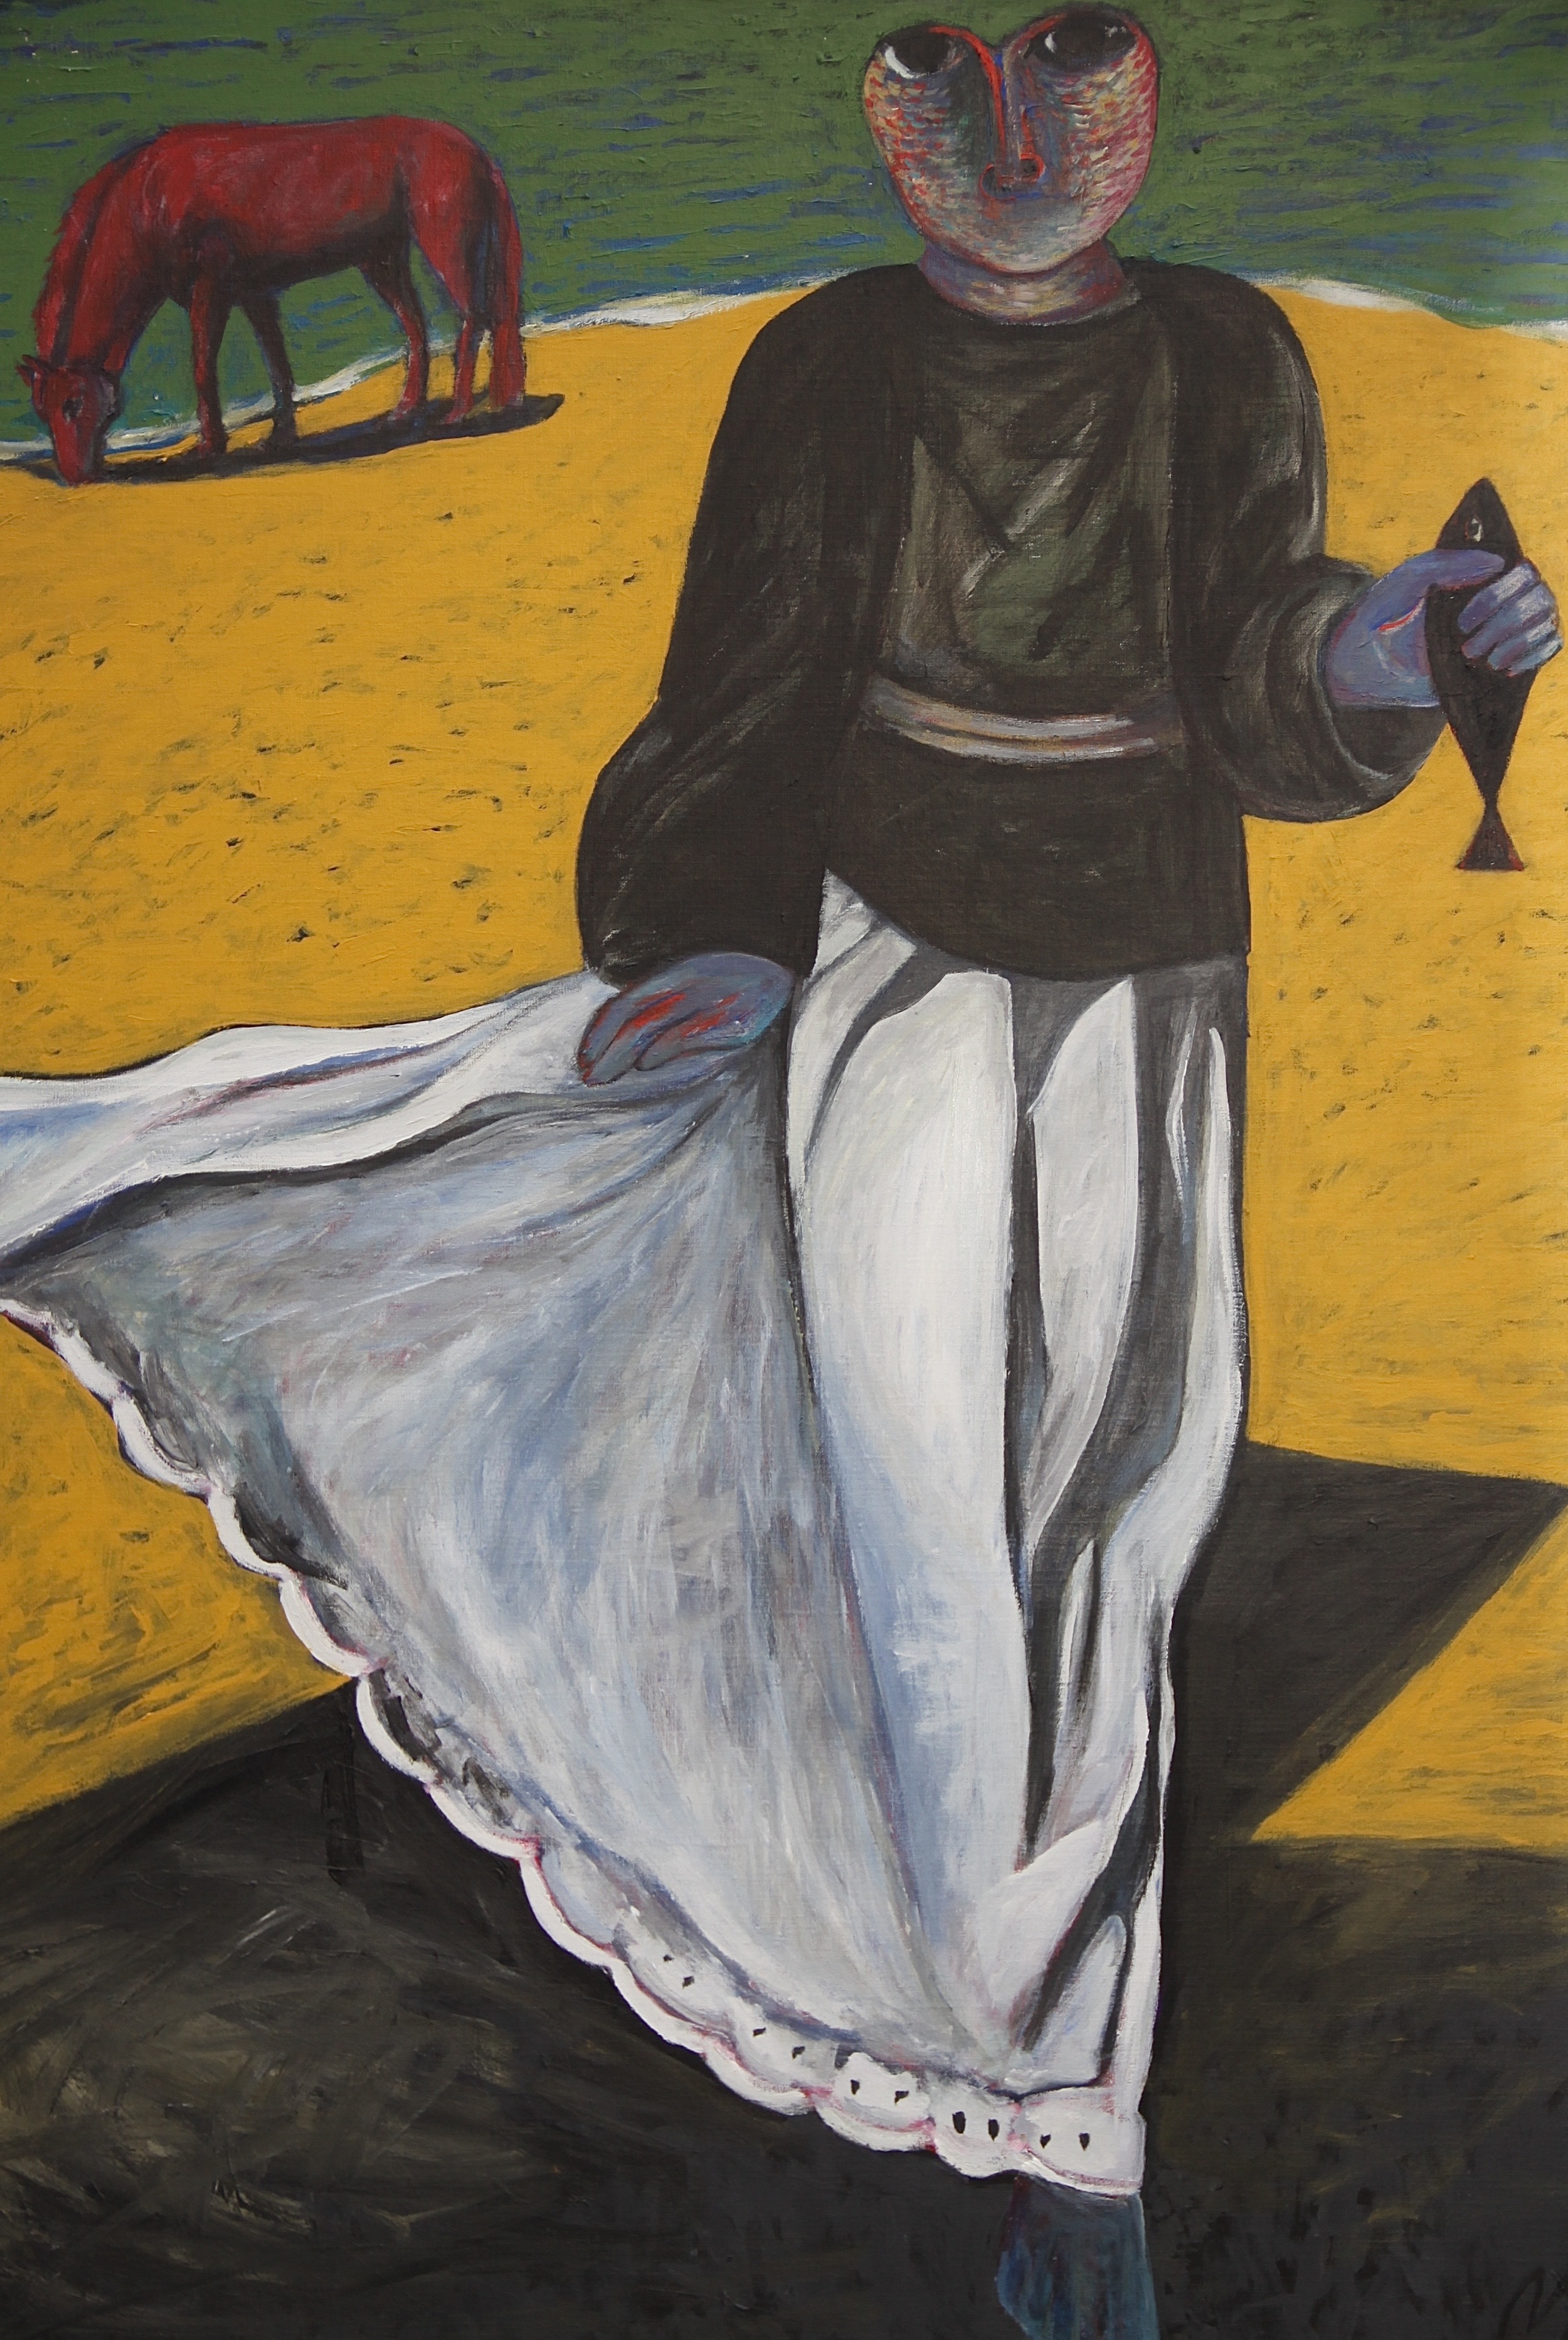   Ahmed Morsi, Black Fish,&nbsp;1984,&nbsp;Acrylic on canvas,&nbsp;152 x 132 cm.  